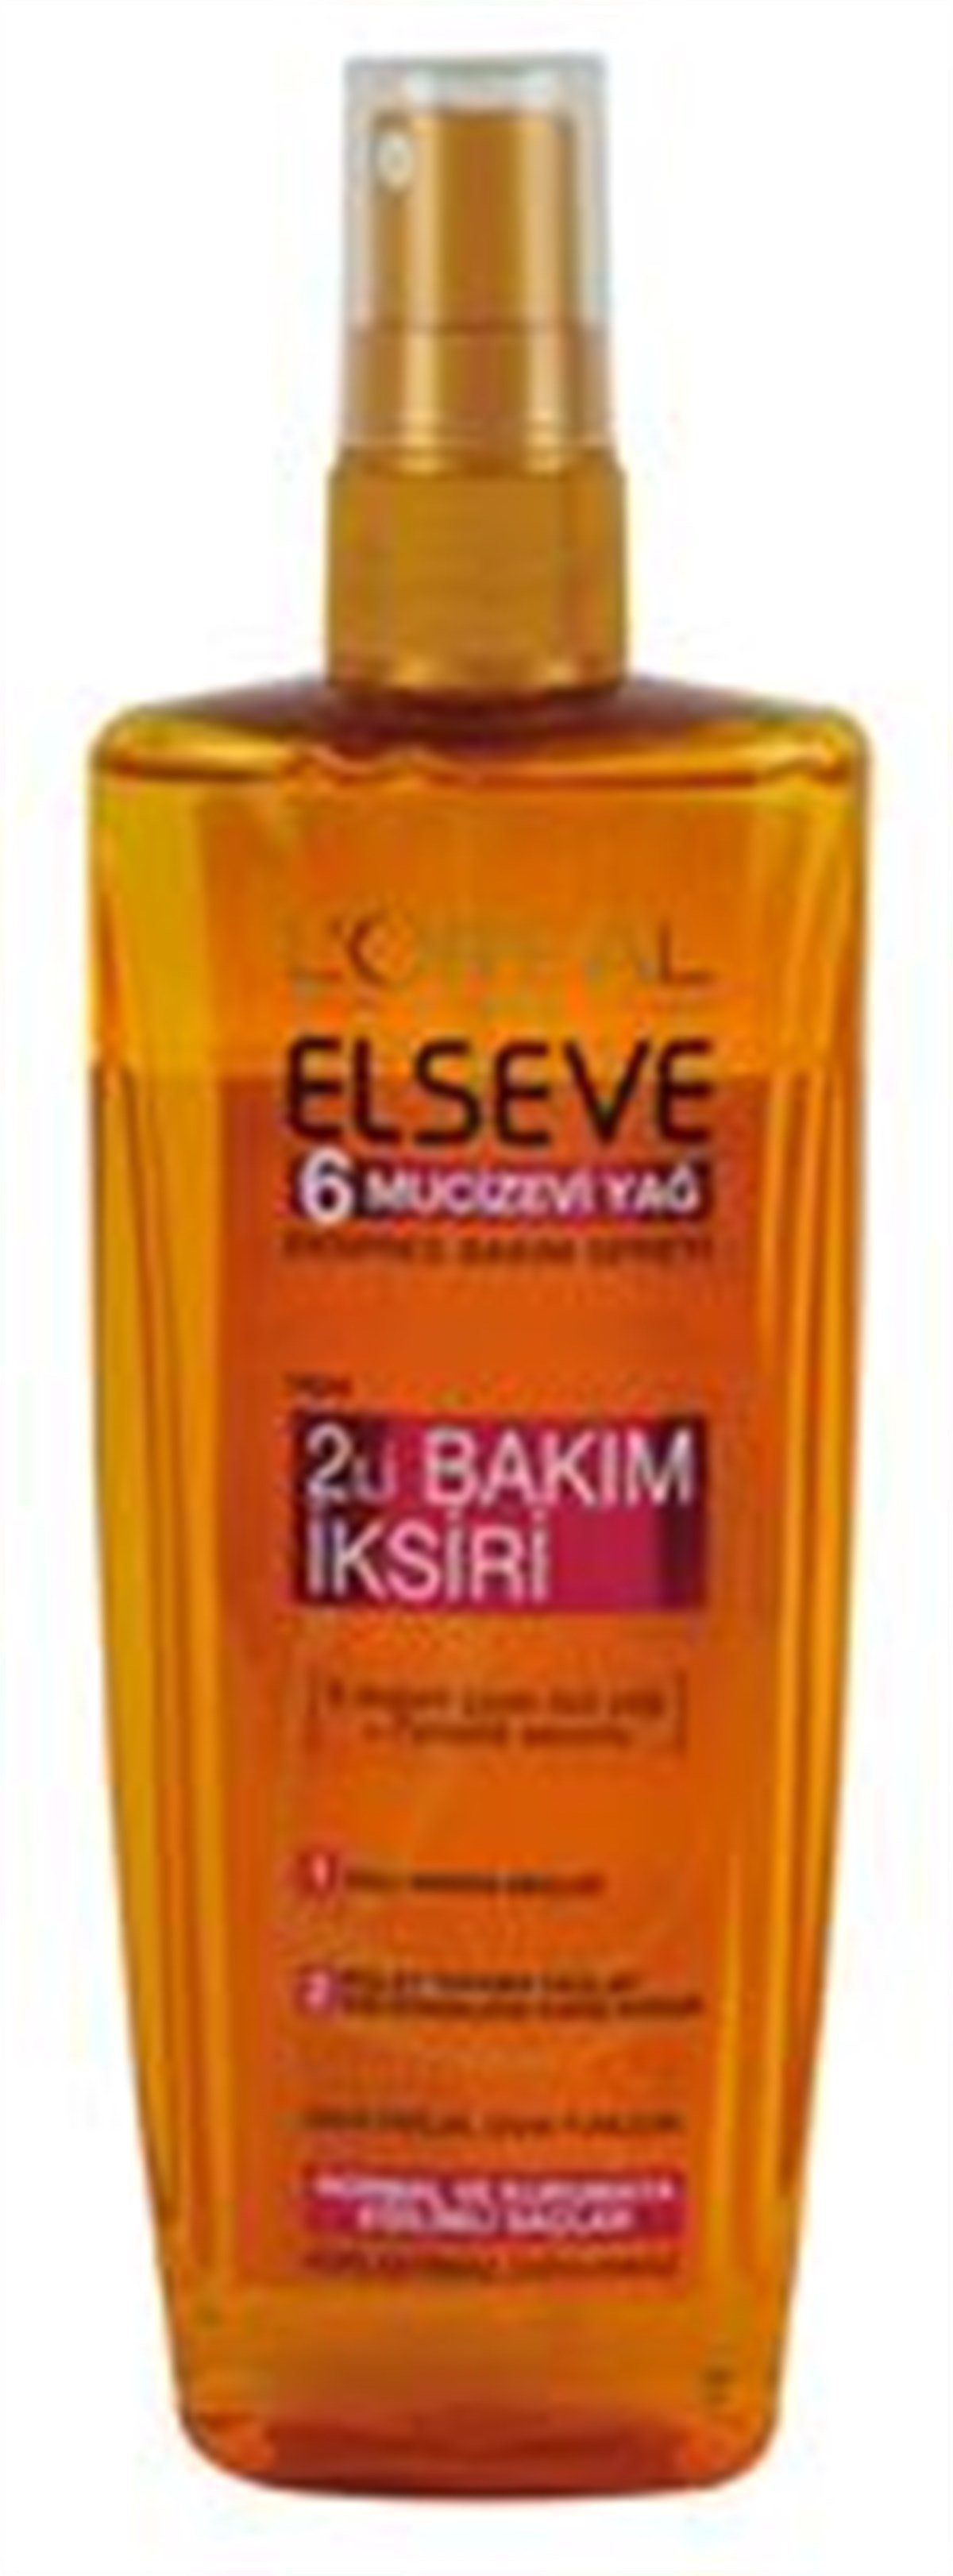 Elseve Sprey 2 Li Bakım İksiri 200Ml-6 Mucize Yağ İstanbul İçi Online  Siparişle Kapında - Üçler Market